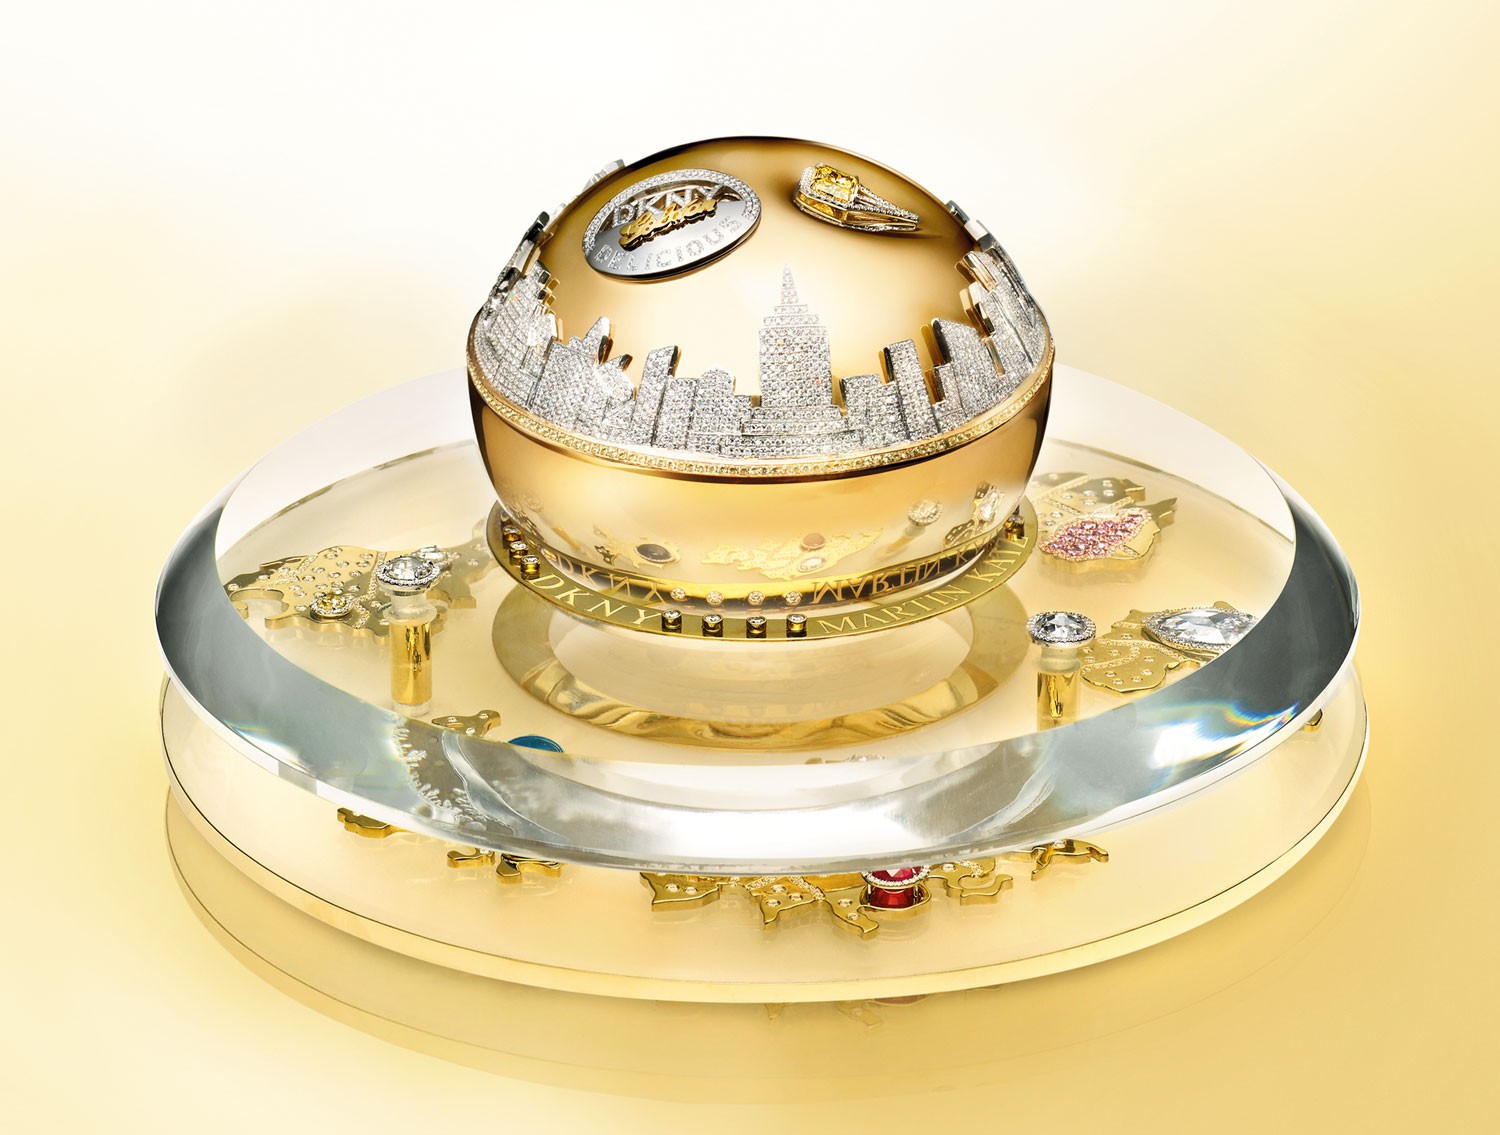 Флакон аромата DKNY Golden Delicious стоимостью 1 миллион долларов